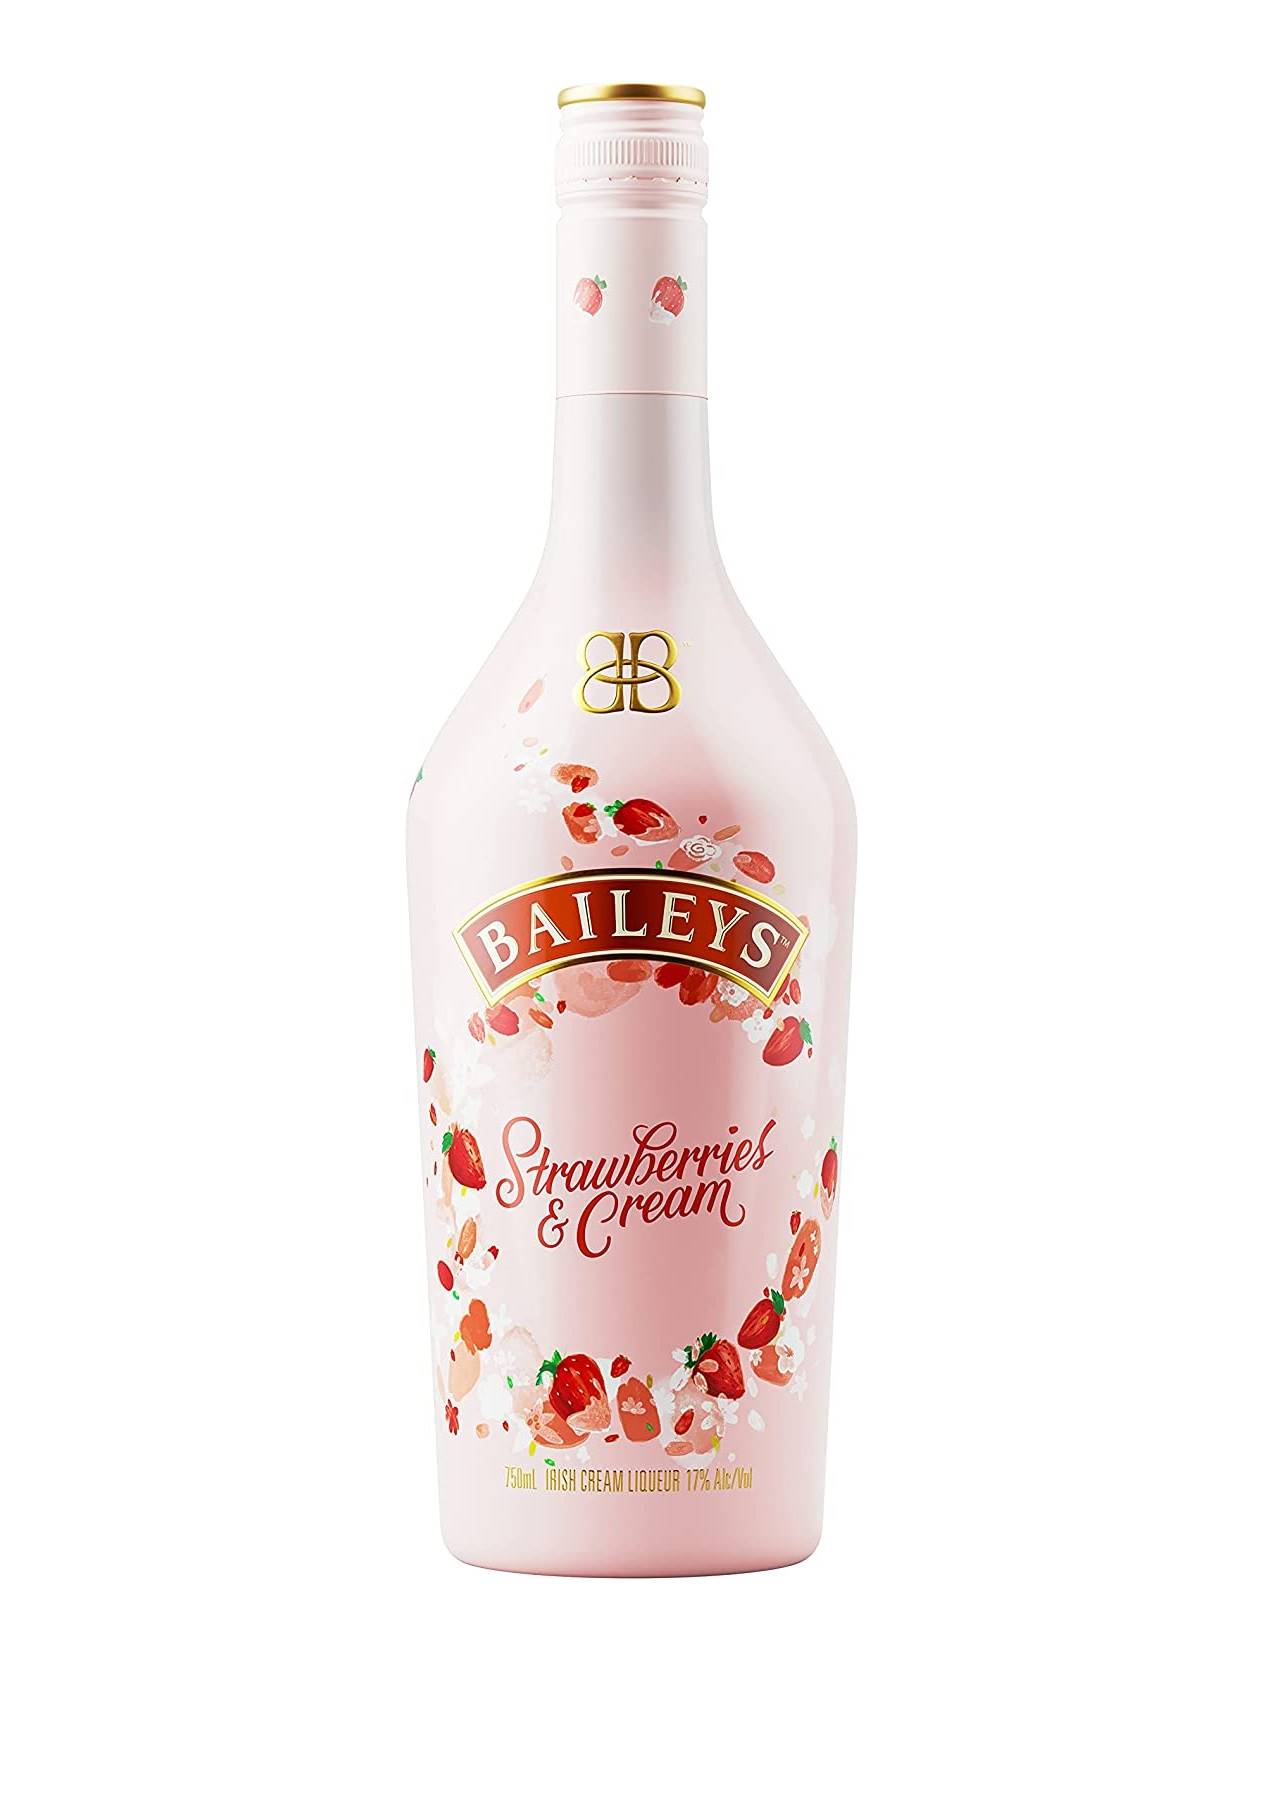 Regalos gourmet: baileys strawberries cream